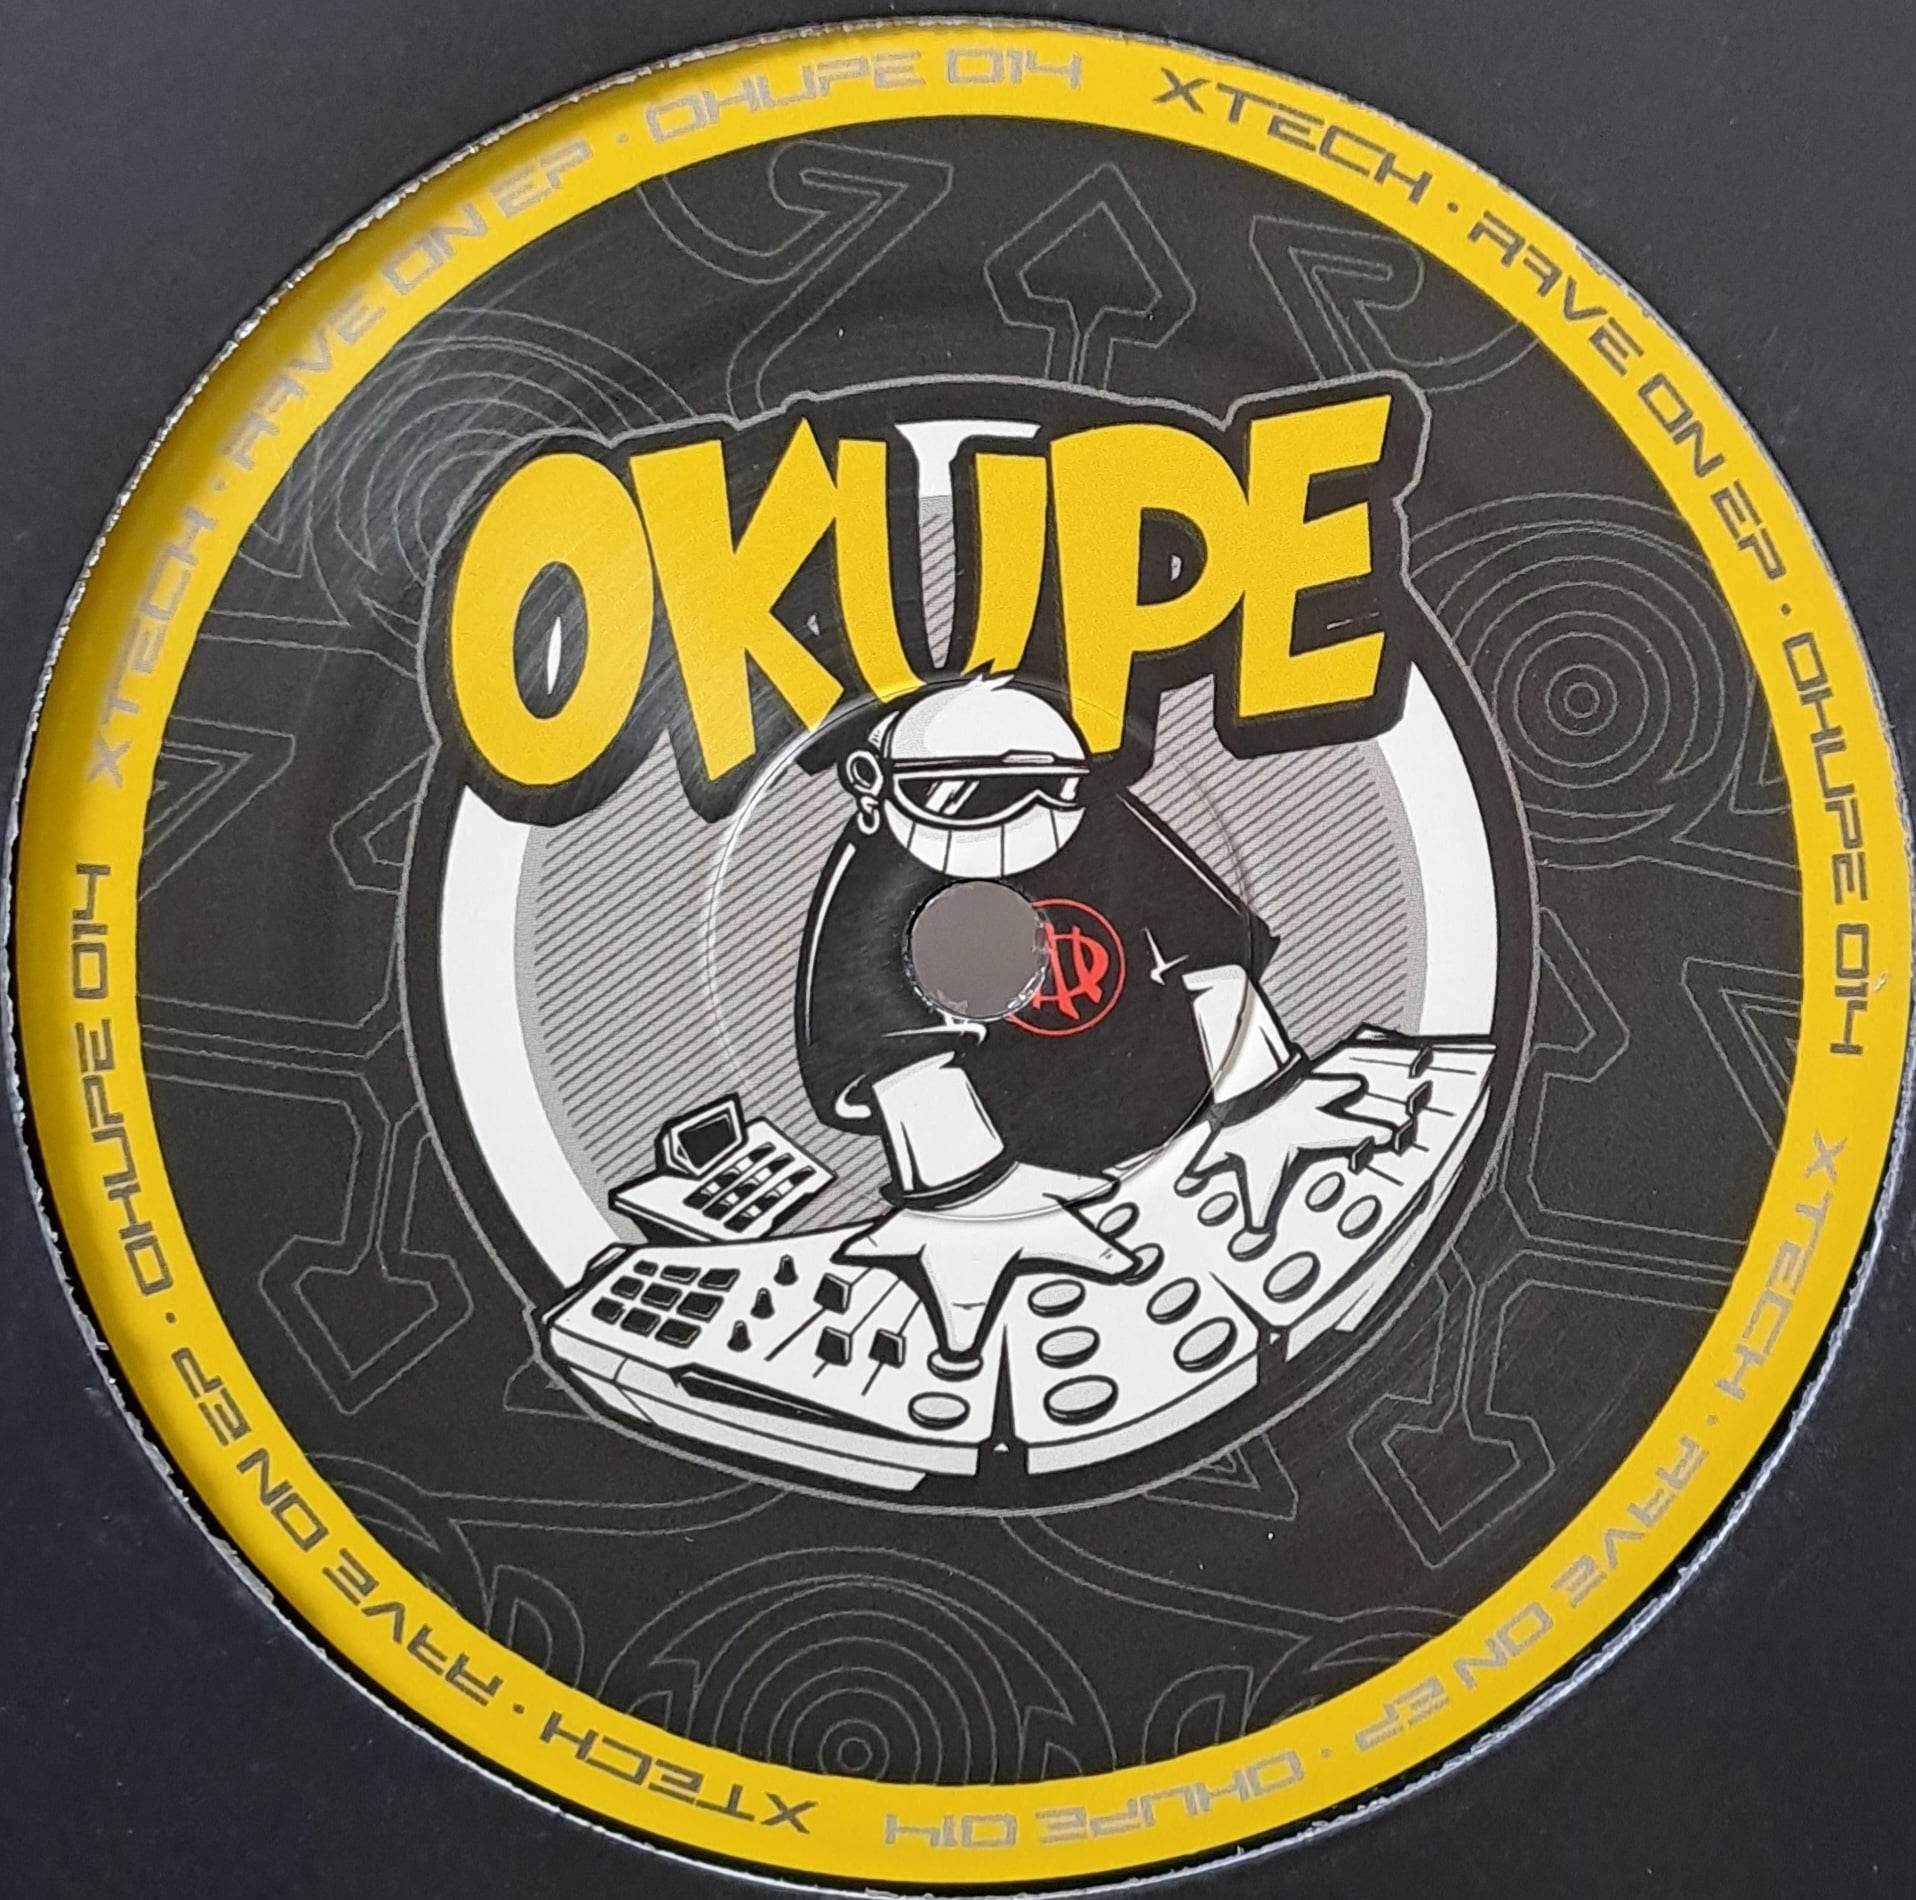 Okupe 14 RP (dernières copies en stock) - vinyle acid